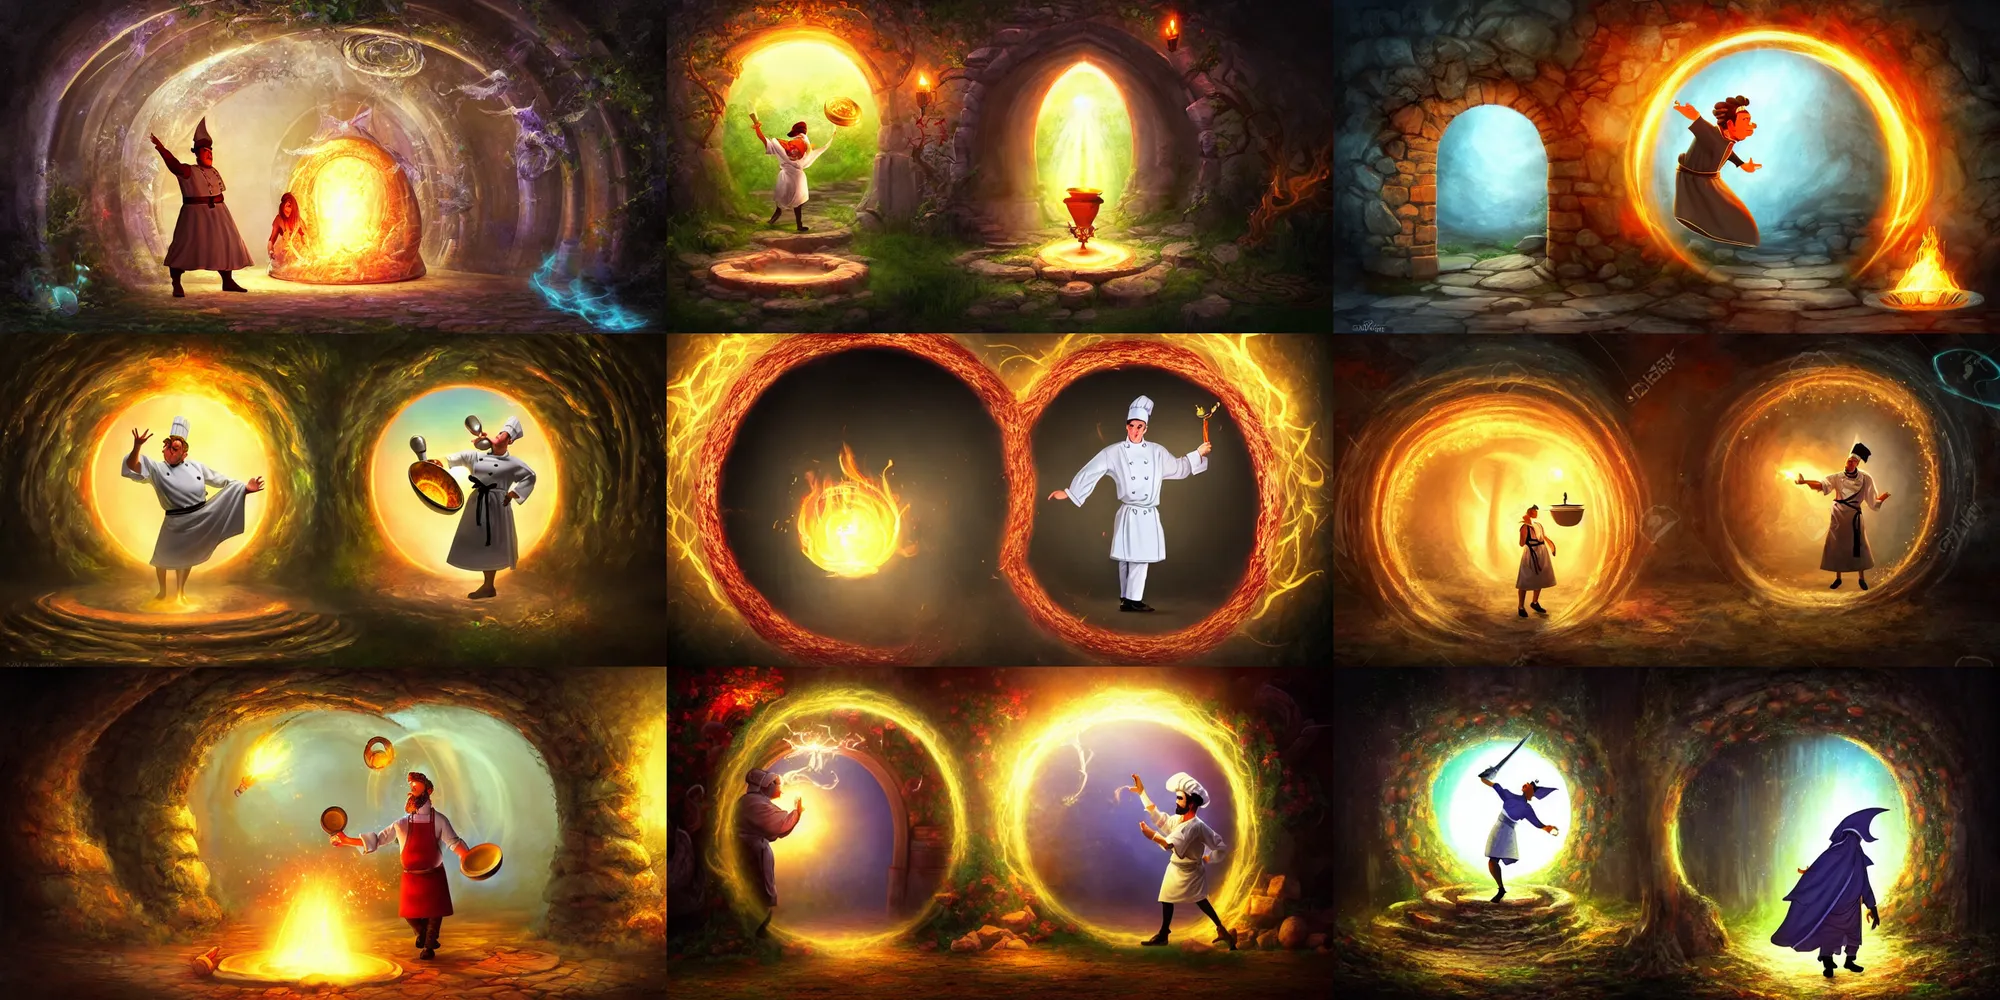 Prompt: a chef character entering a magical portal, fantasy art